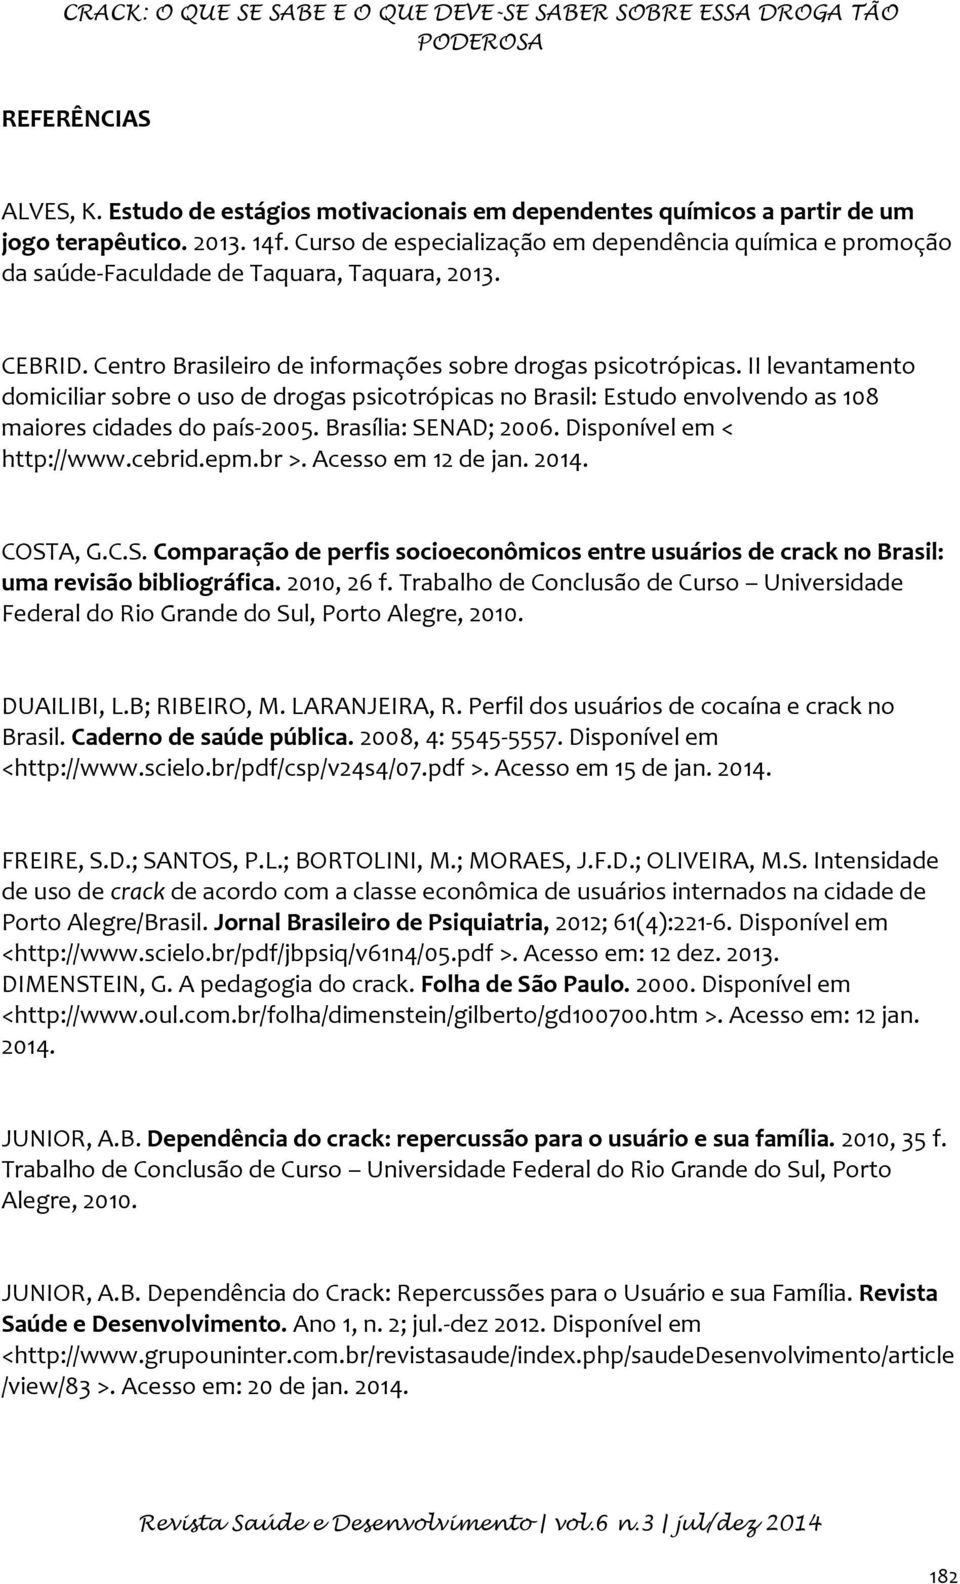 II levantamento domiciliar sobre o uso de drogas psicotrópicas no Brasil: Estudo envolvendo as 108 maiores cidades do país-2005. Brasília: SENAD; 2006. Disponível em < http://www.cebrid.epm.br >.